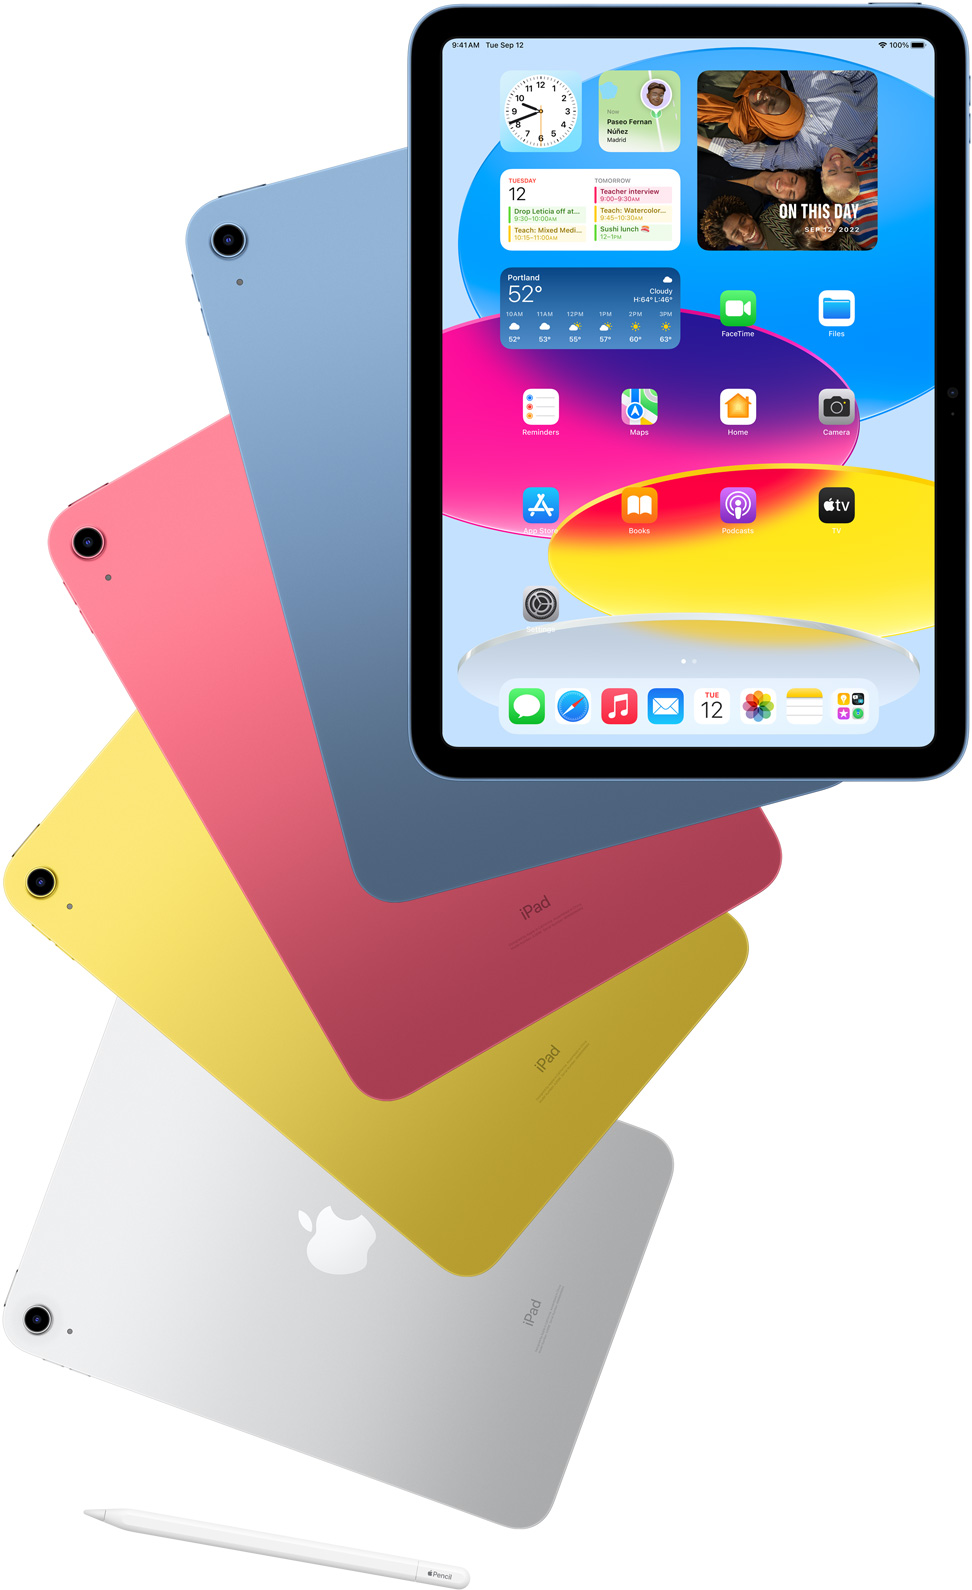 Фронтален поглед към екрана на iPad и син, розов, жълт и сребрист iPad с гръб зад него. Apple Pencil, поставен до подредени iPad модели.